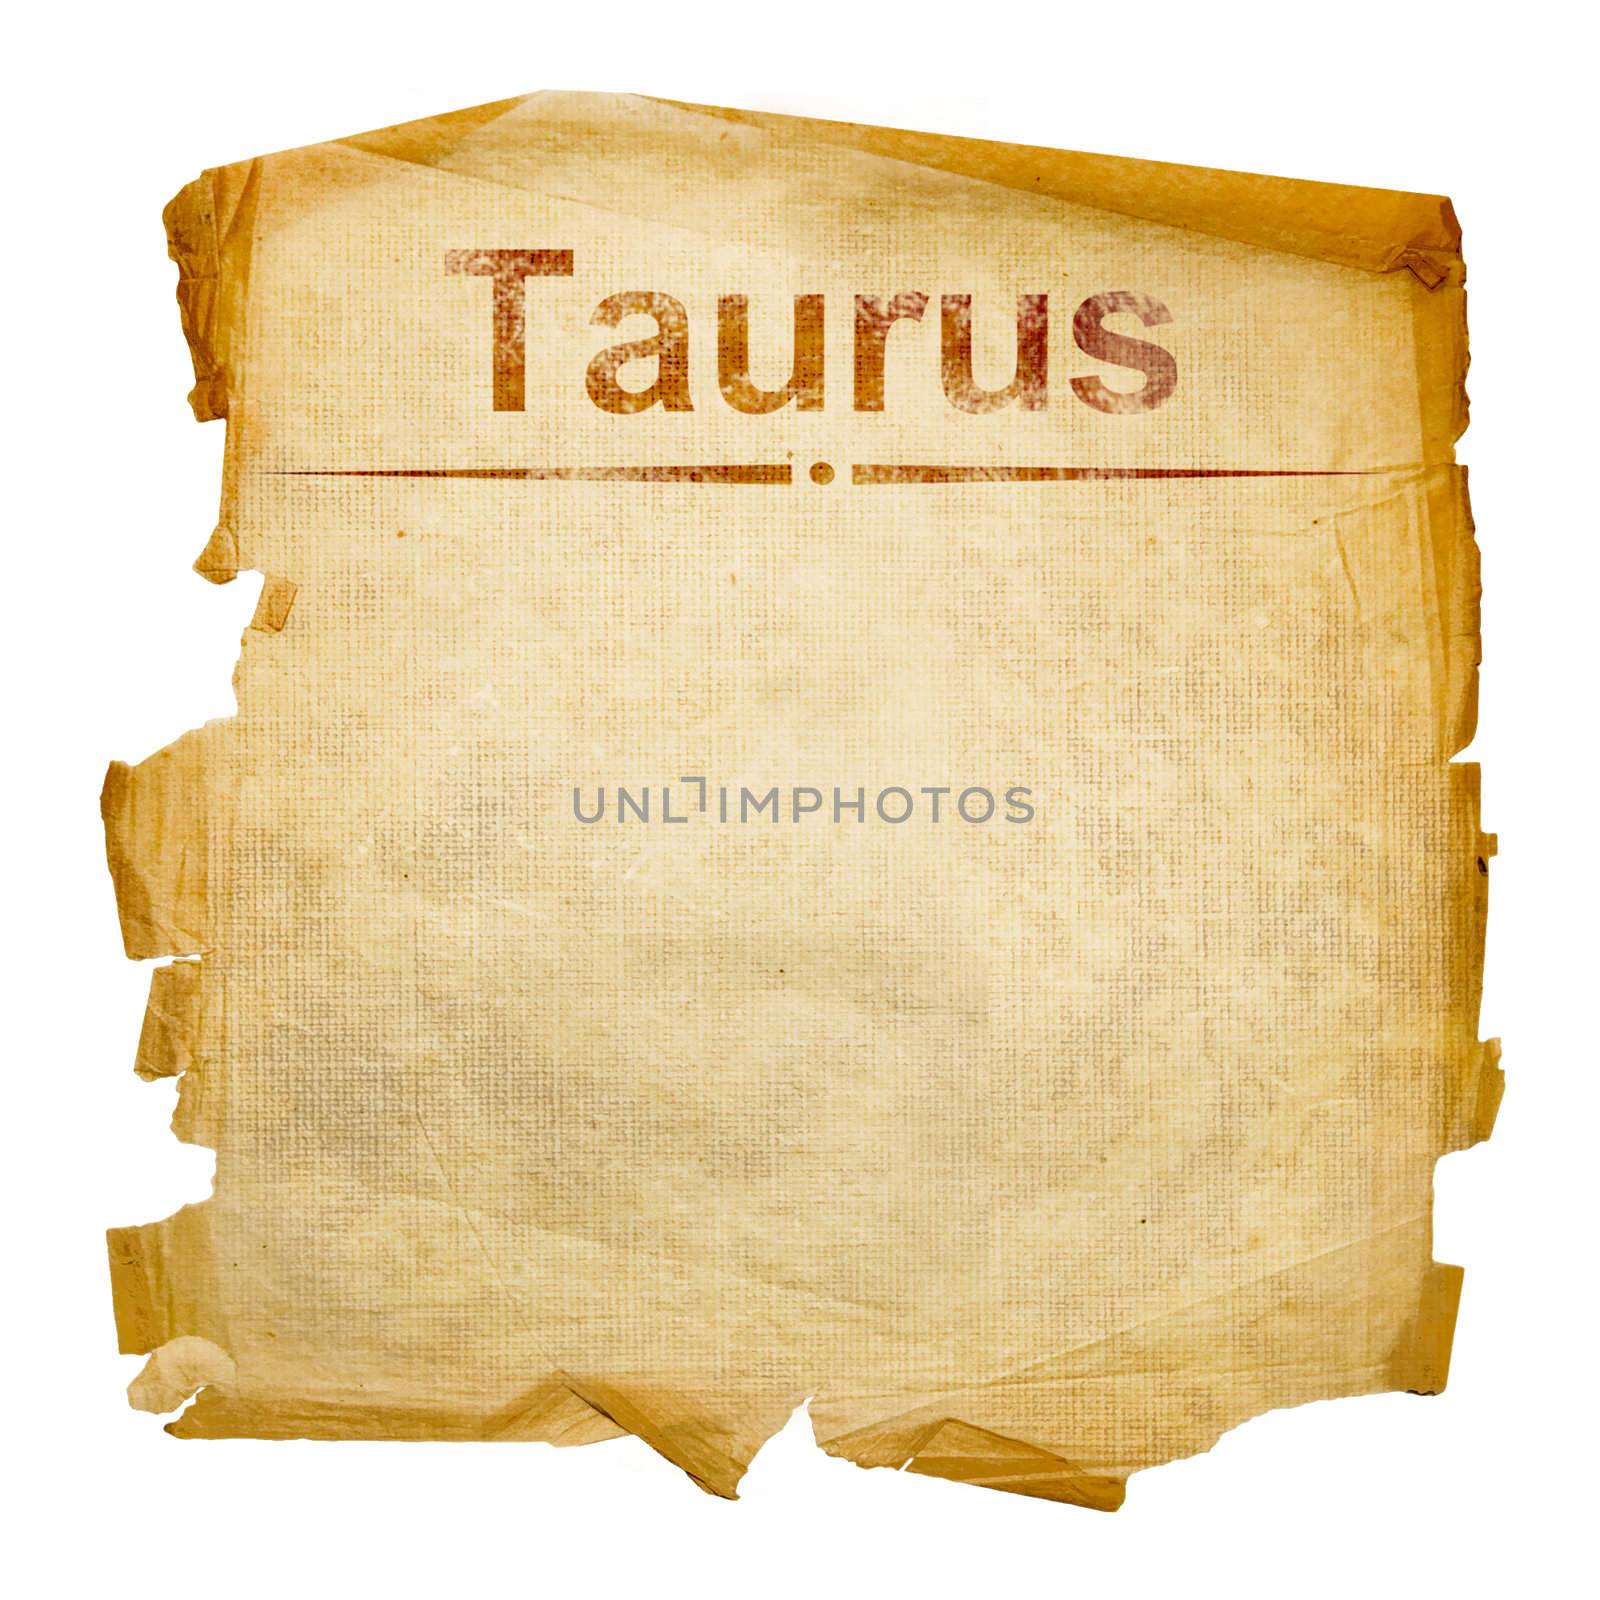 Taurus zodiac old, isolated on white background.